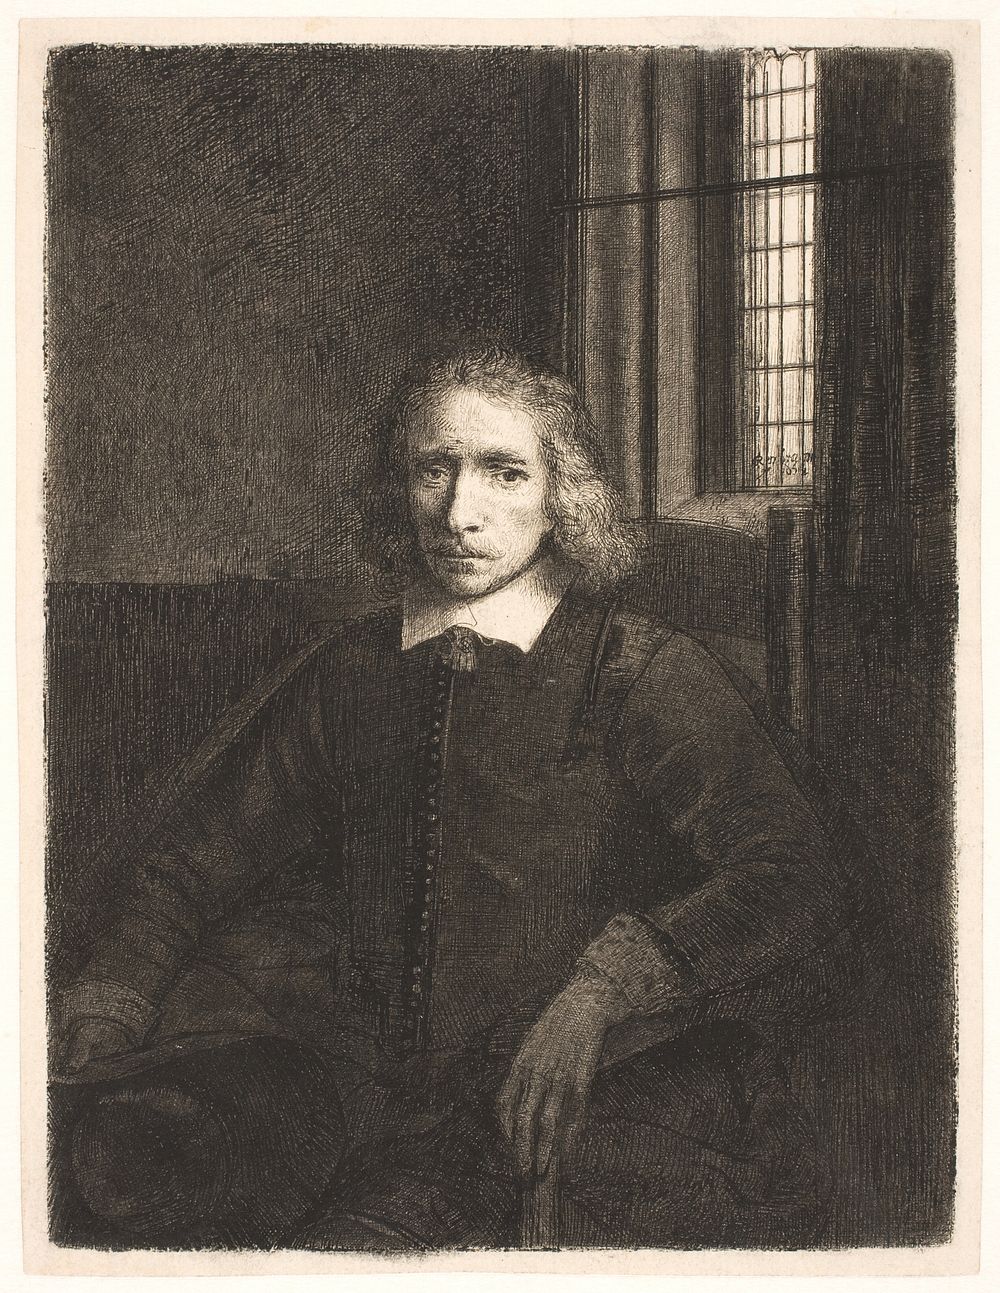 Thomas Jacobsz Haaring (the young Haaring) by Rembrandt van Rijn